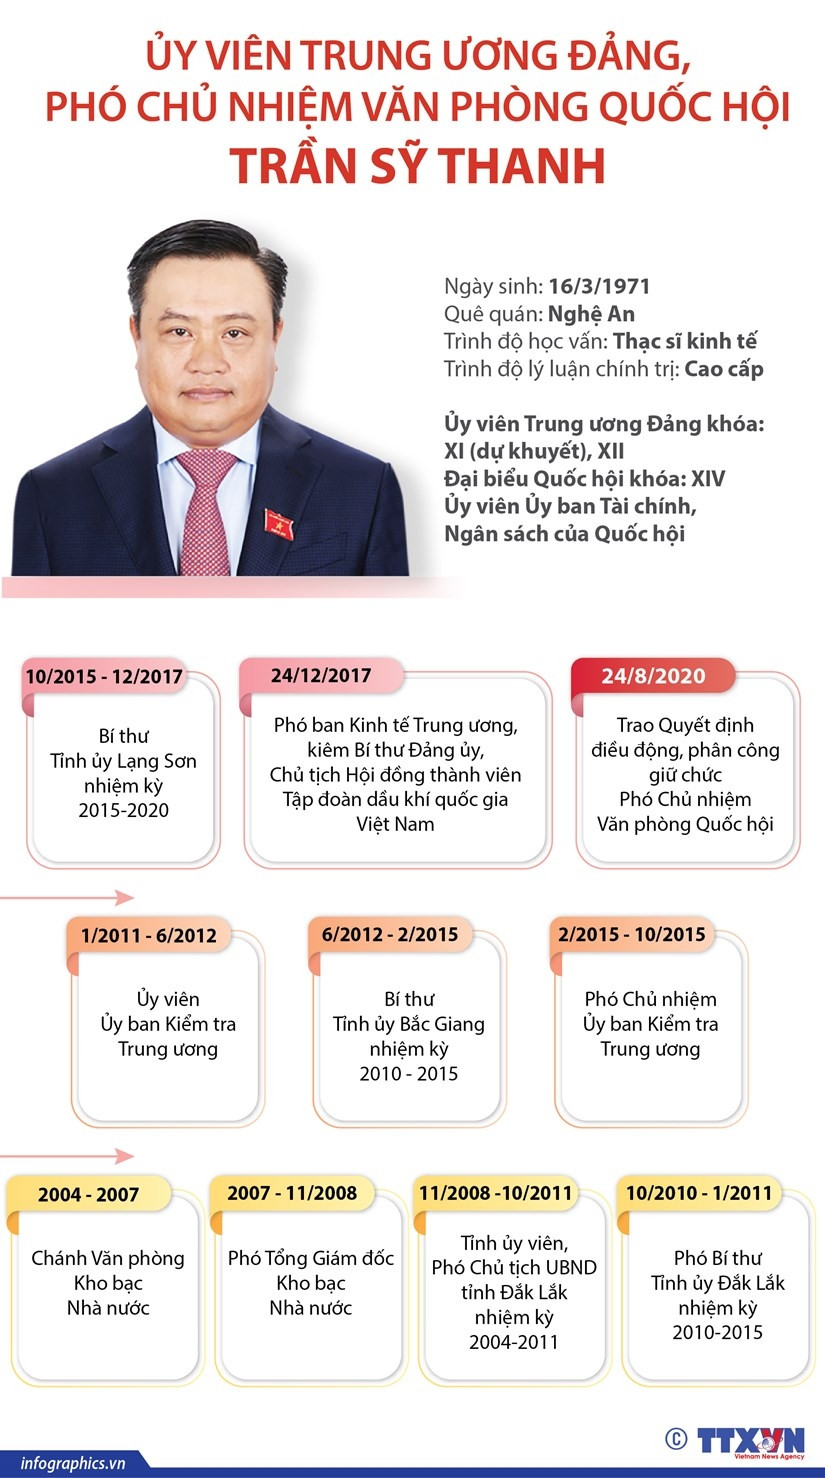 [Infographics] Tan Pho Chu nhiem Van phong Quoc hoi Tran Sy Thanh hinh anh 1